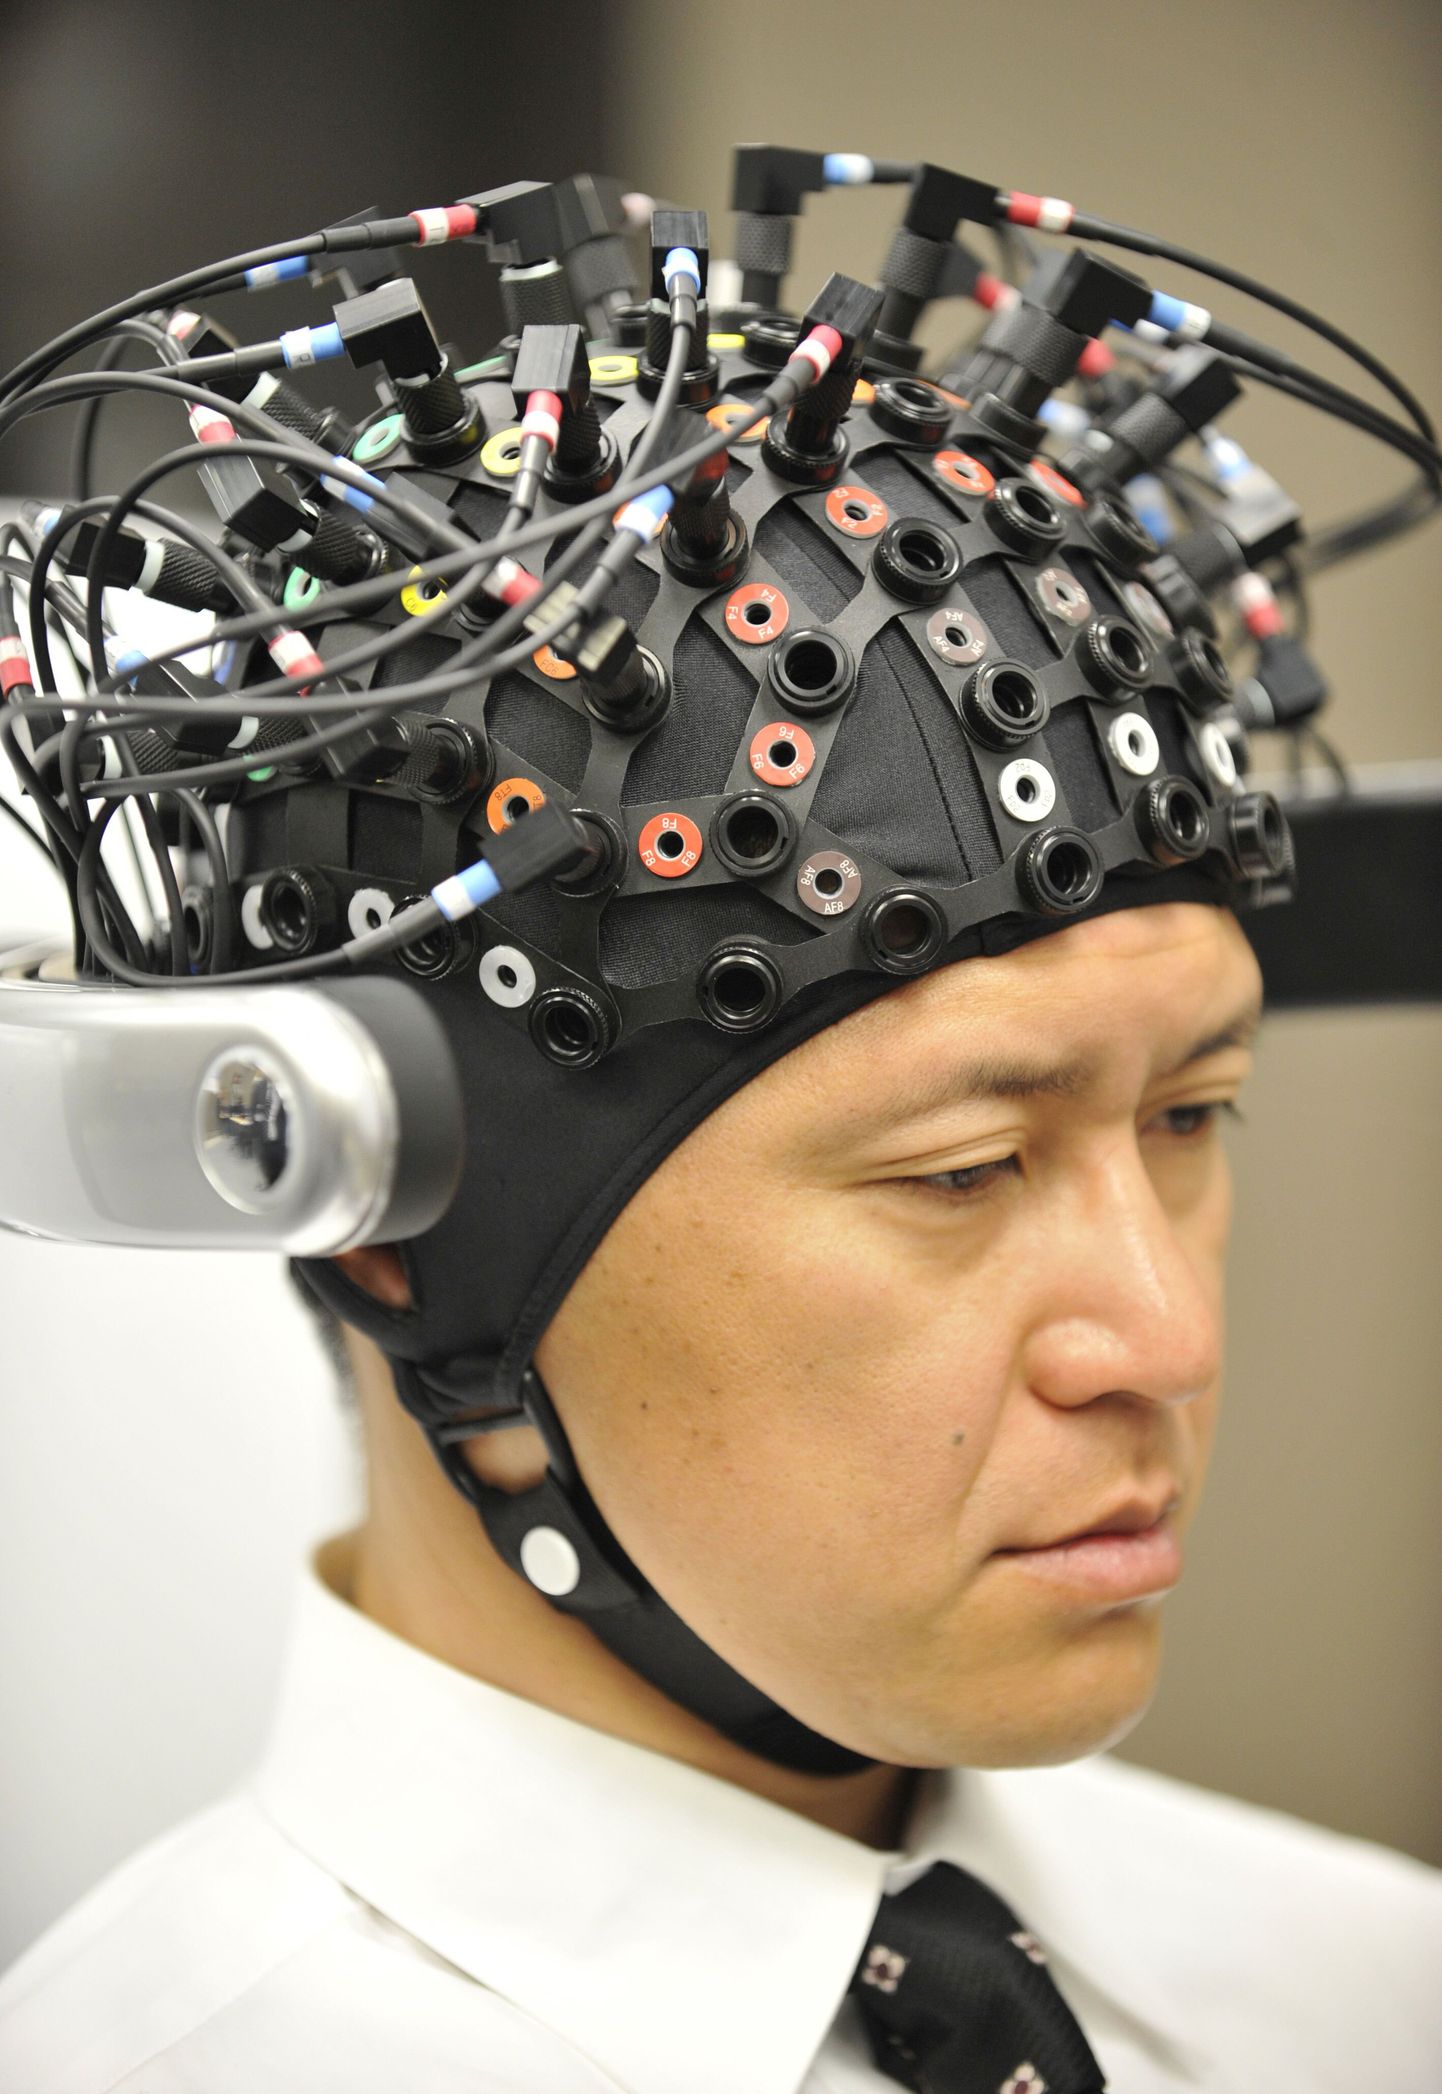 EEG (lühend sõnast elektroentsefalograafia) uurib peaaju pinna elektrilisi kõikumisi. Uurimiseks pannakse peanahale 21 metallist elektroodi, mis on ühendatud juhtmetega EEG aparaadi külge ja saadud signaal kirjutatakse kas paberile või arvutisse.